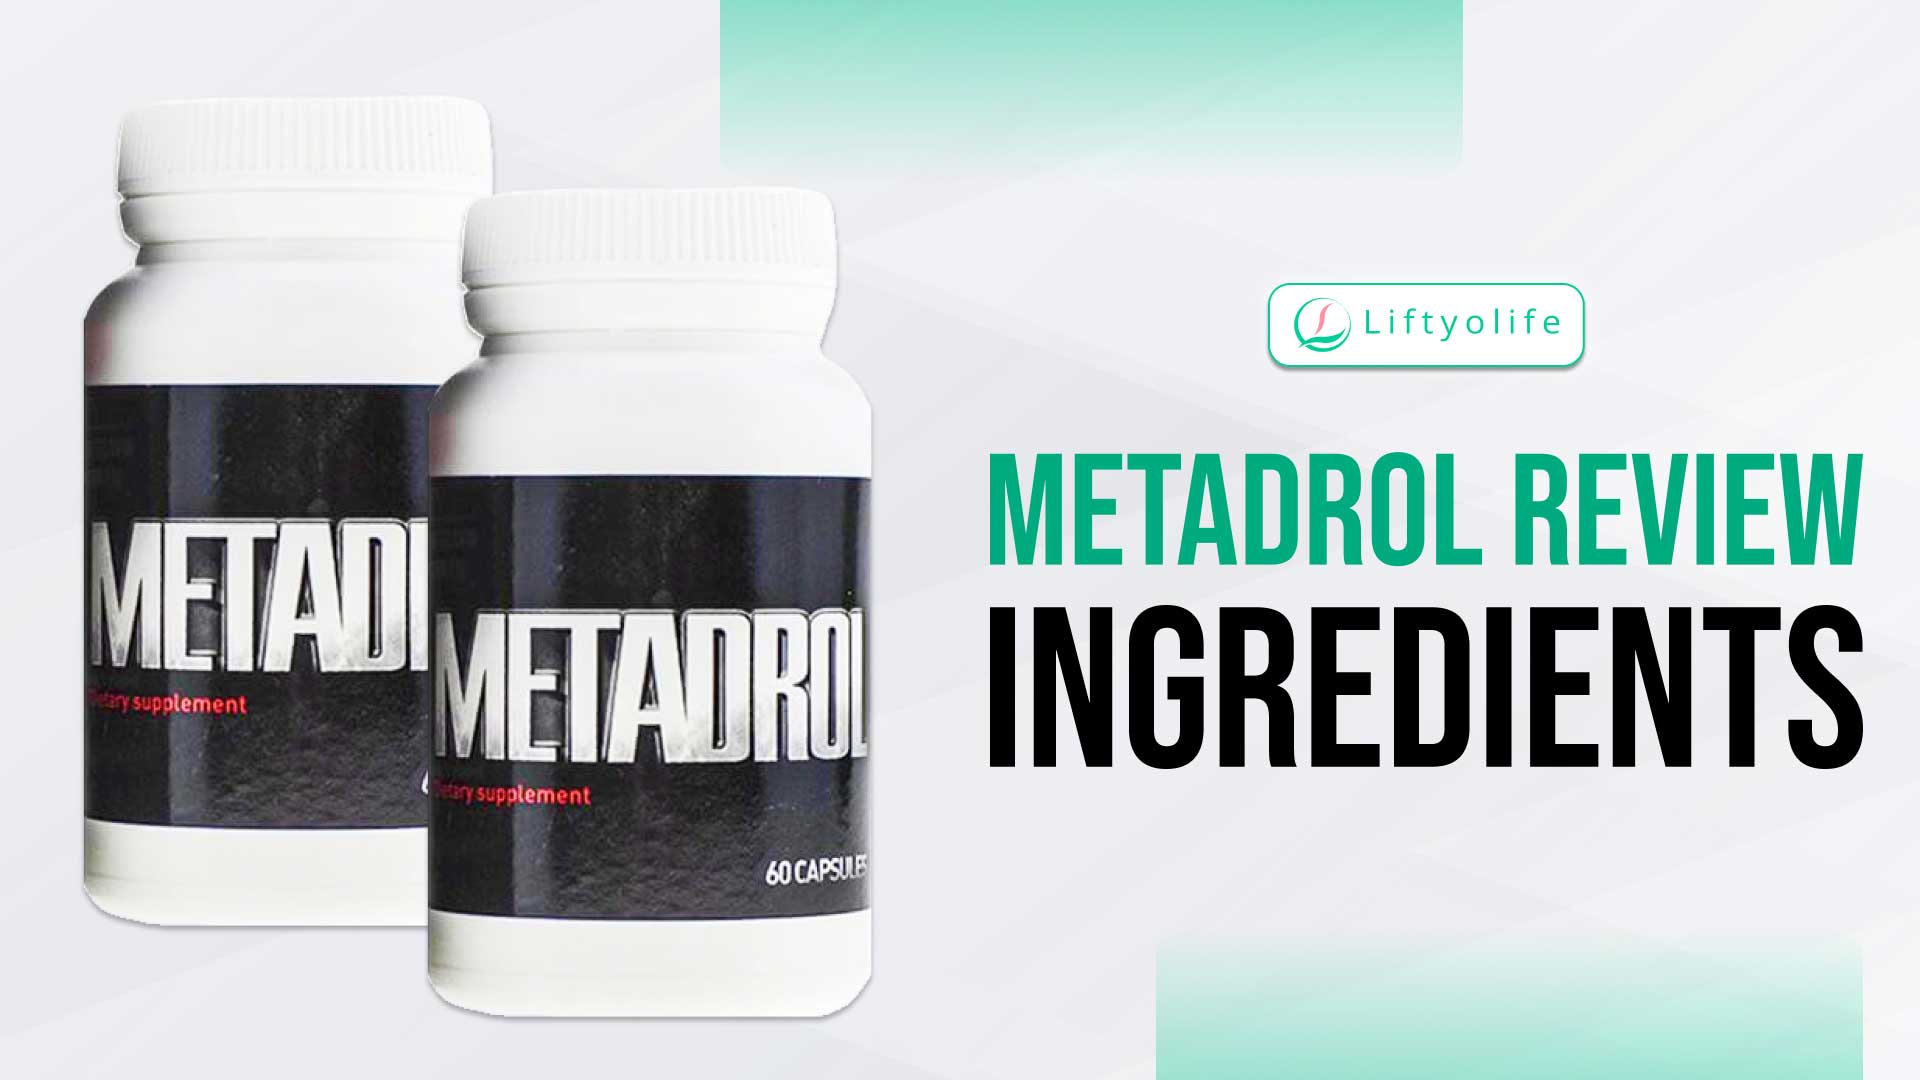 Metadrol Review: Ingredients